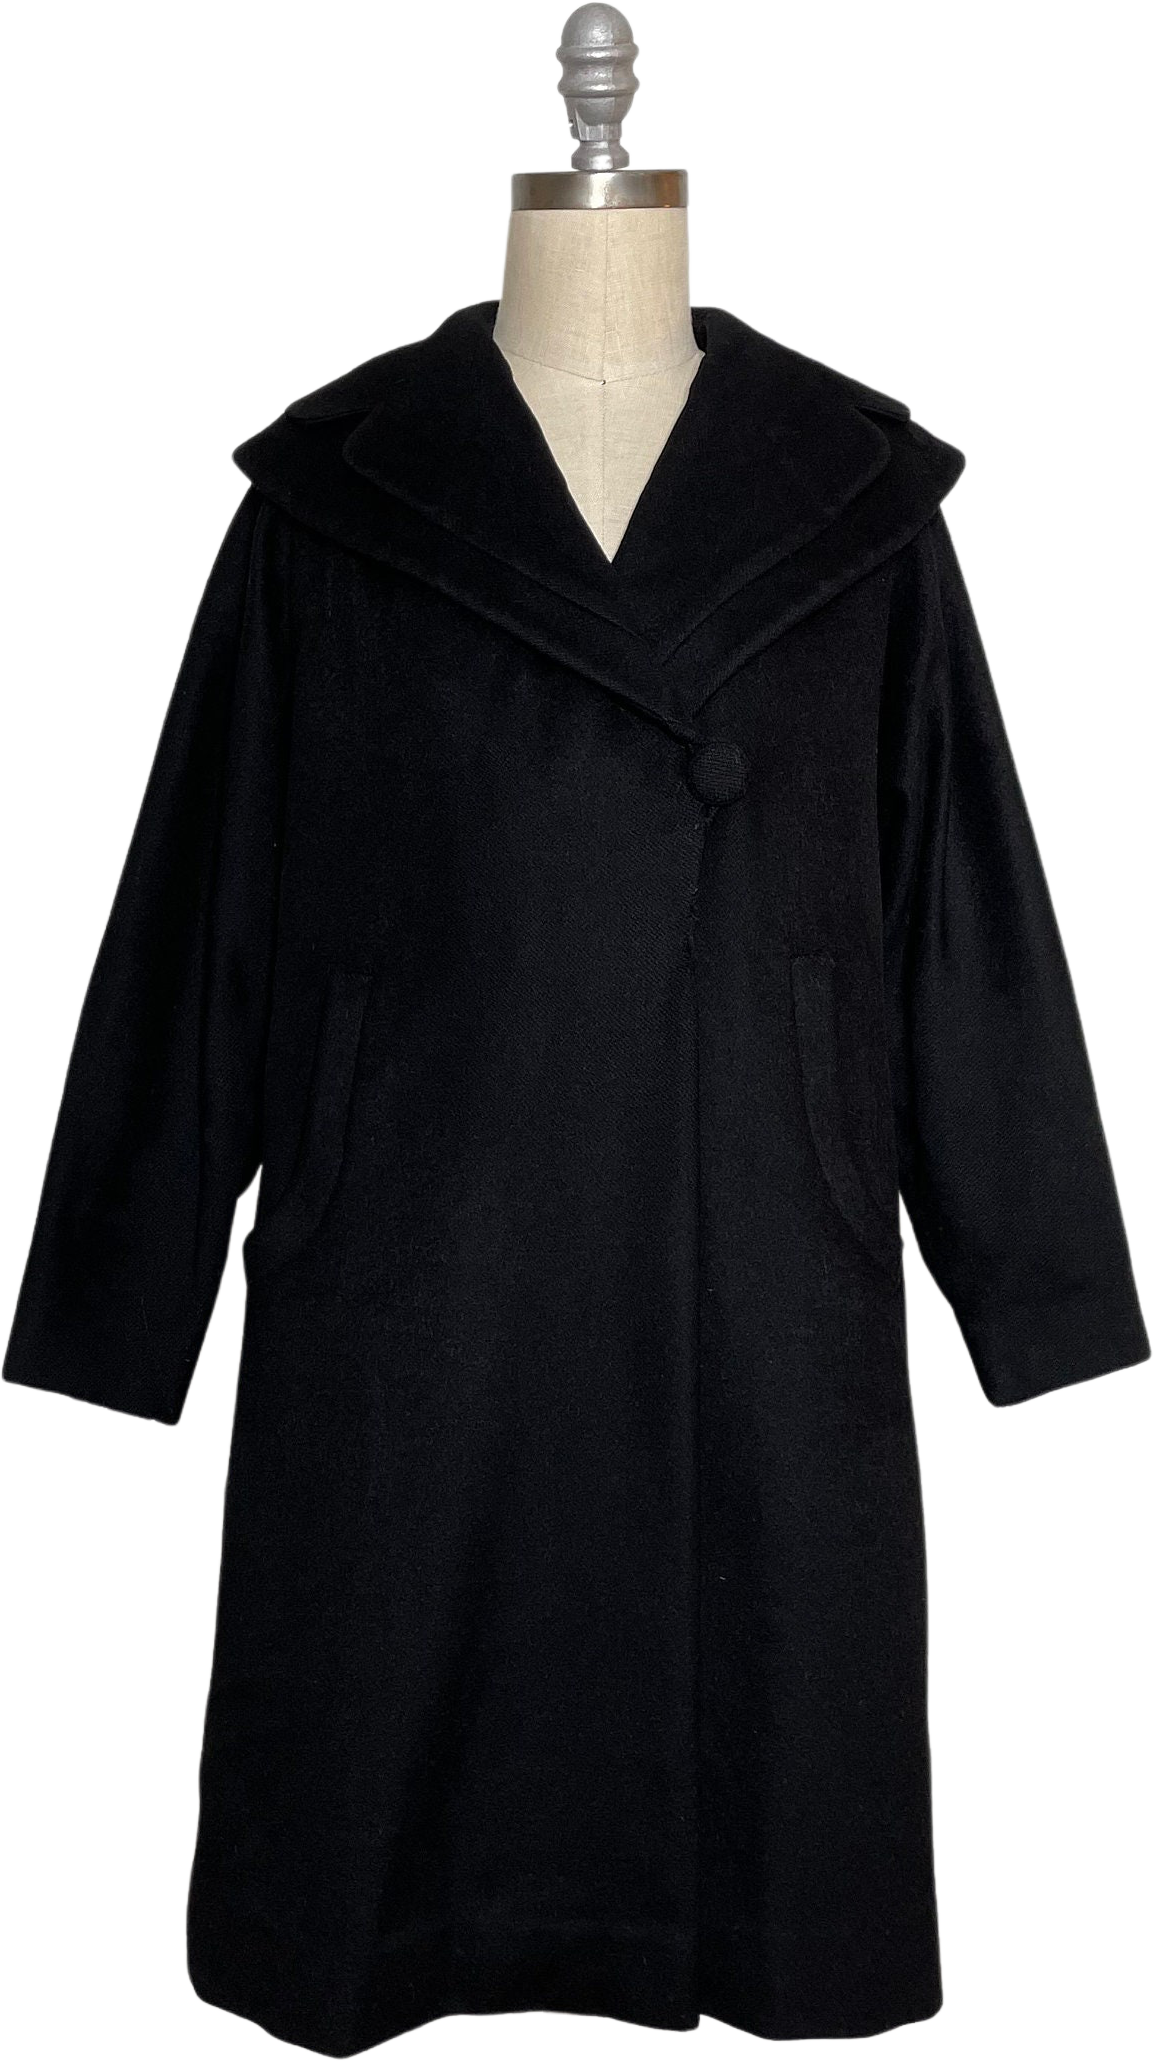 50s Black Virgin Wool Overcoat by Forstmann